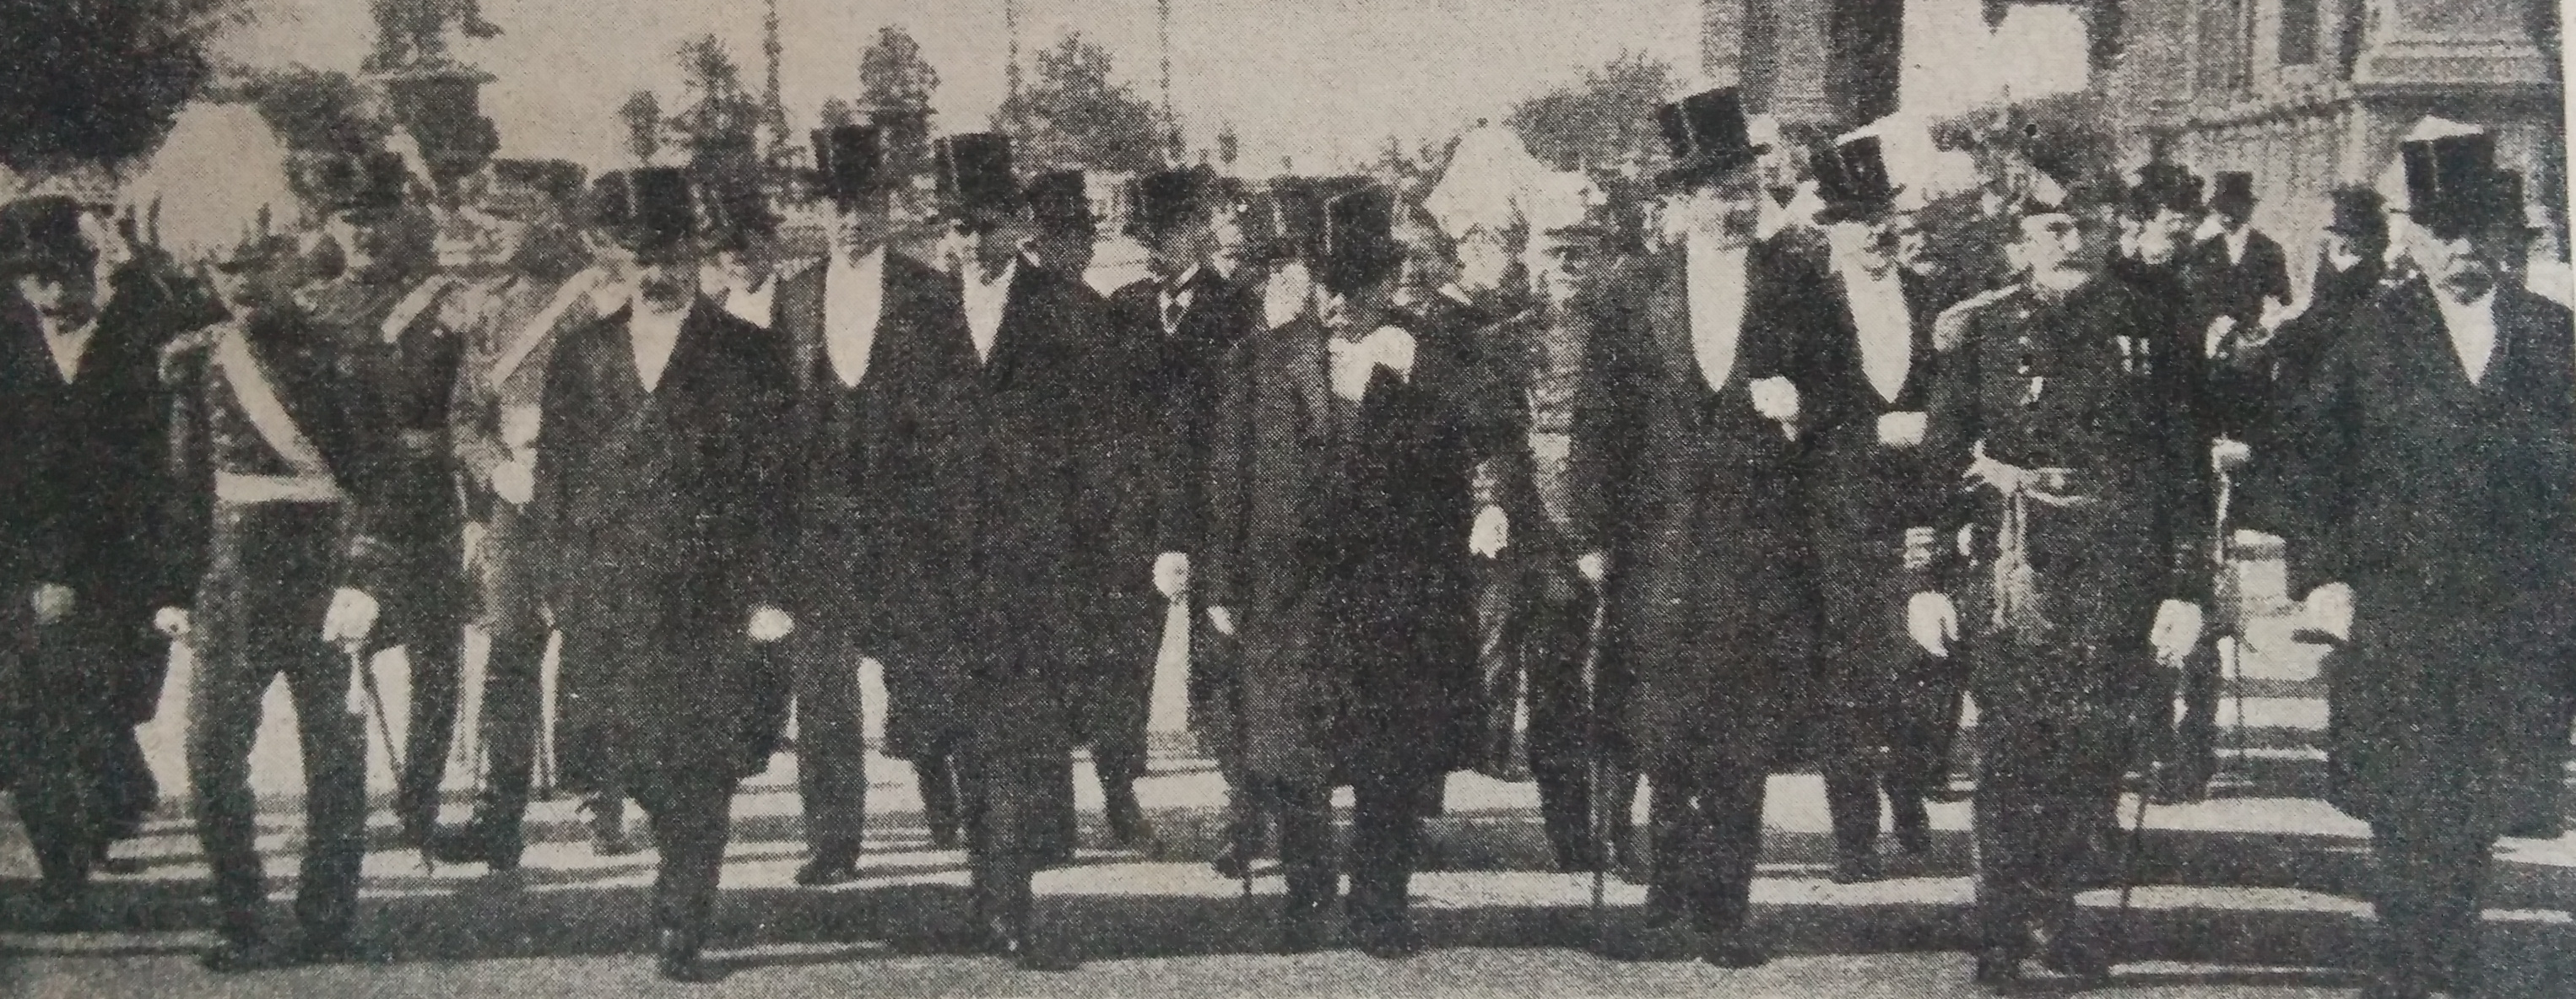 La celebración del 9 de Julio de 1916, en Buenos Aires, encabezada por el entonces presidente de la Nación Dr. Victorino de la Plaza, y miembros de su gabinete ministerial.